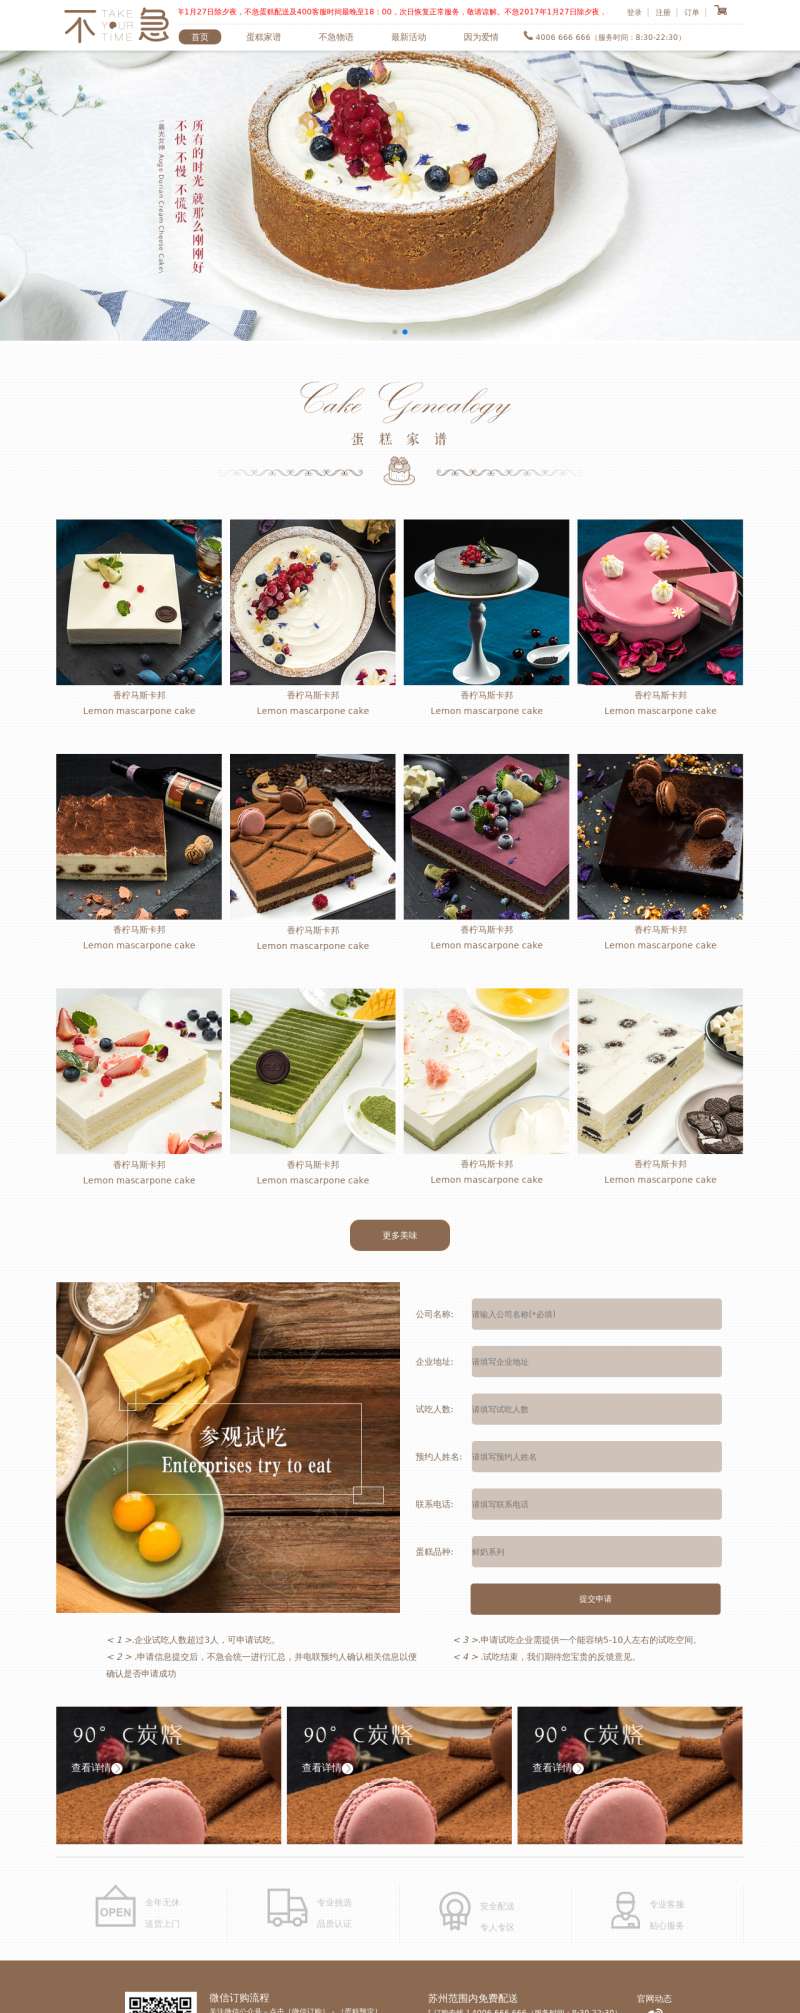 不急蛋糕甜品店网站静态模板